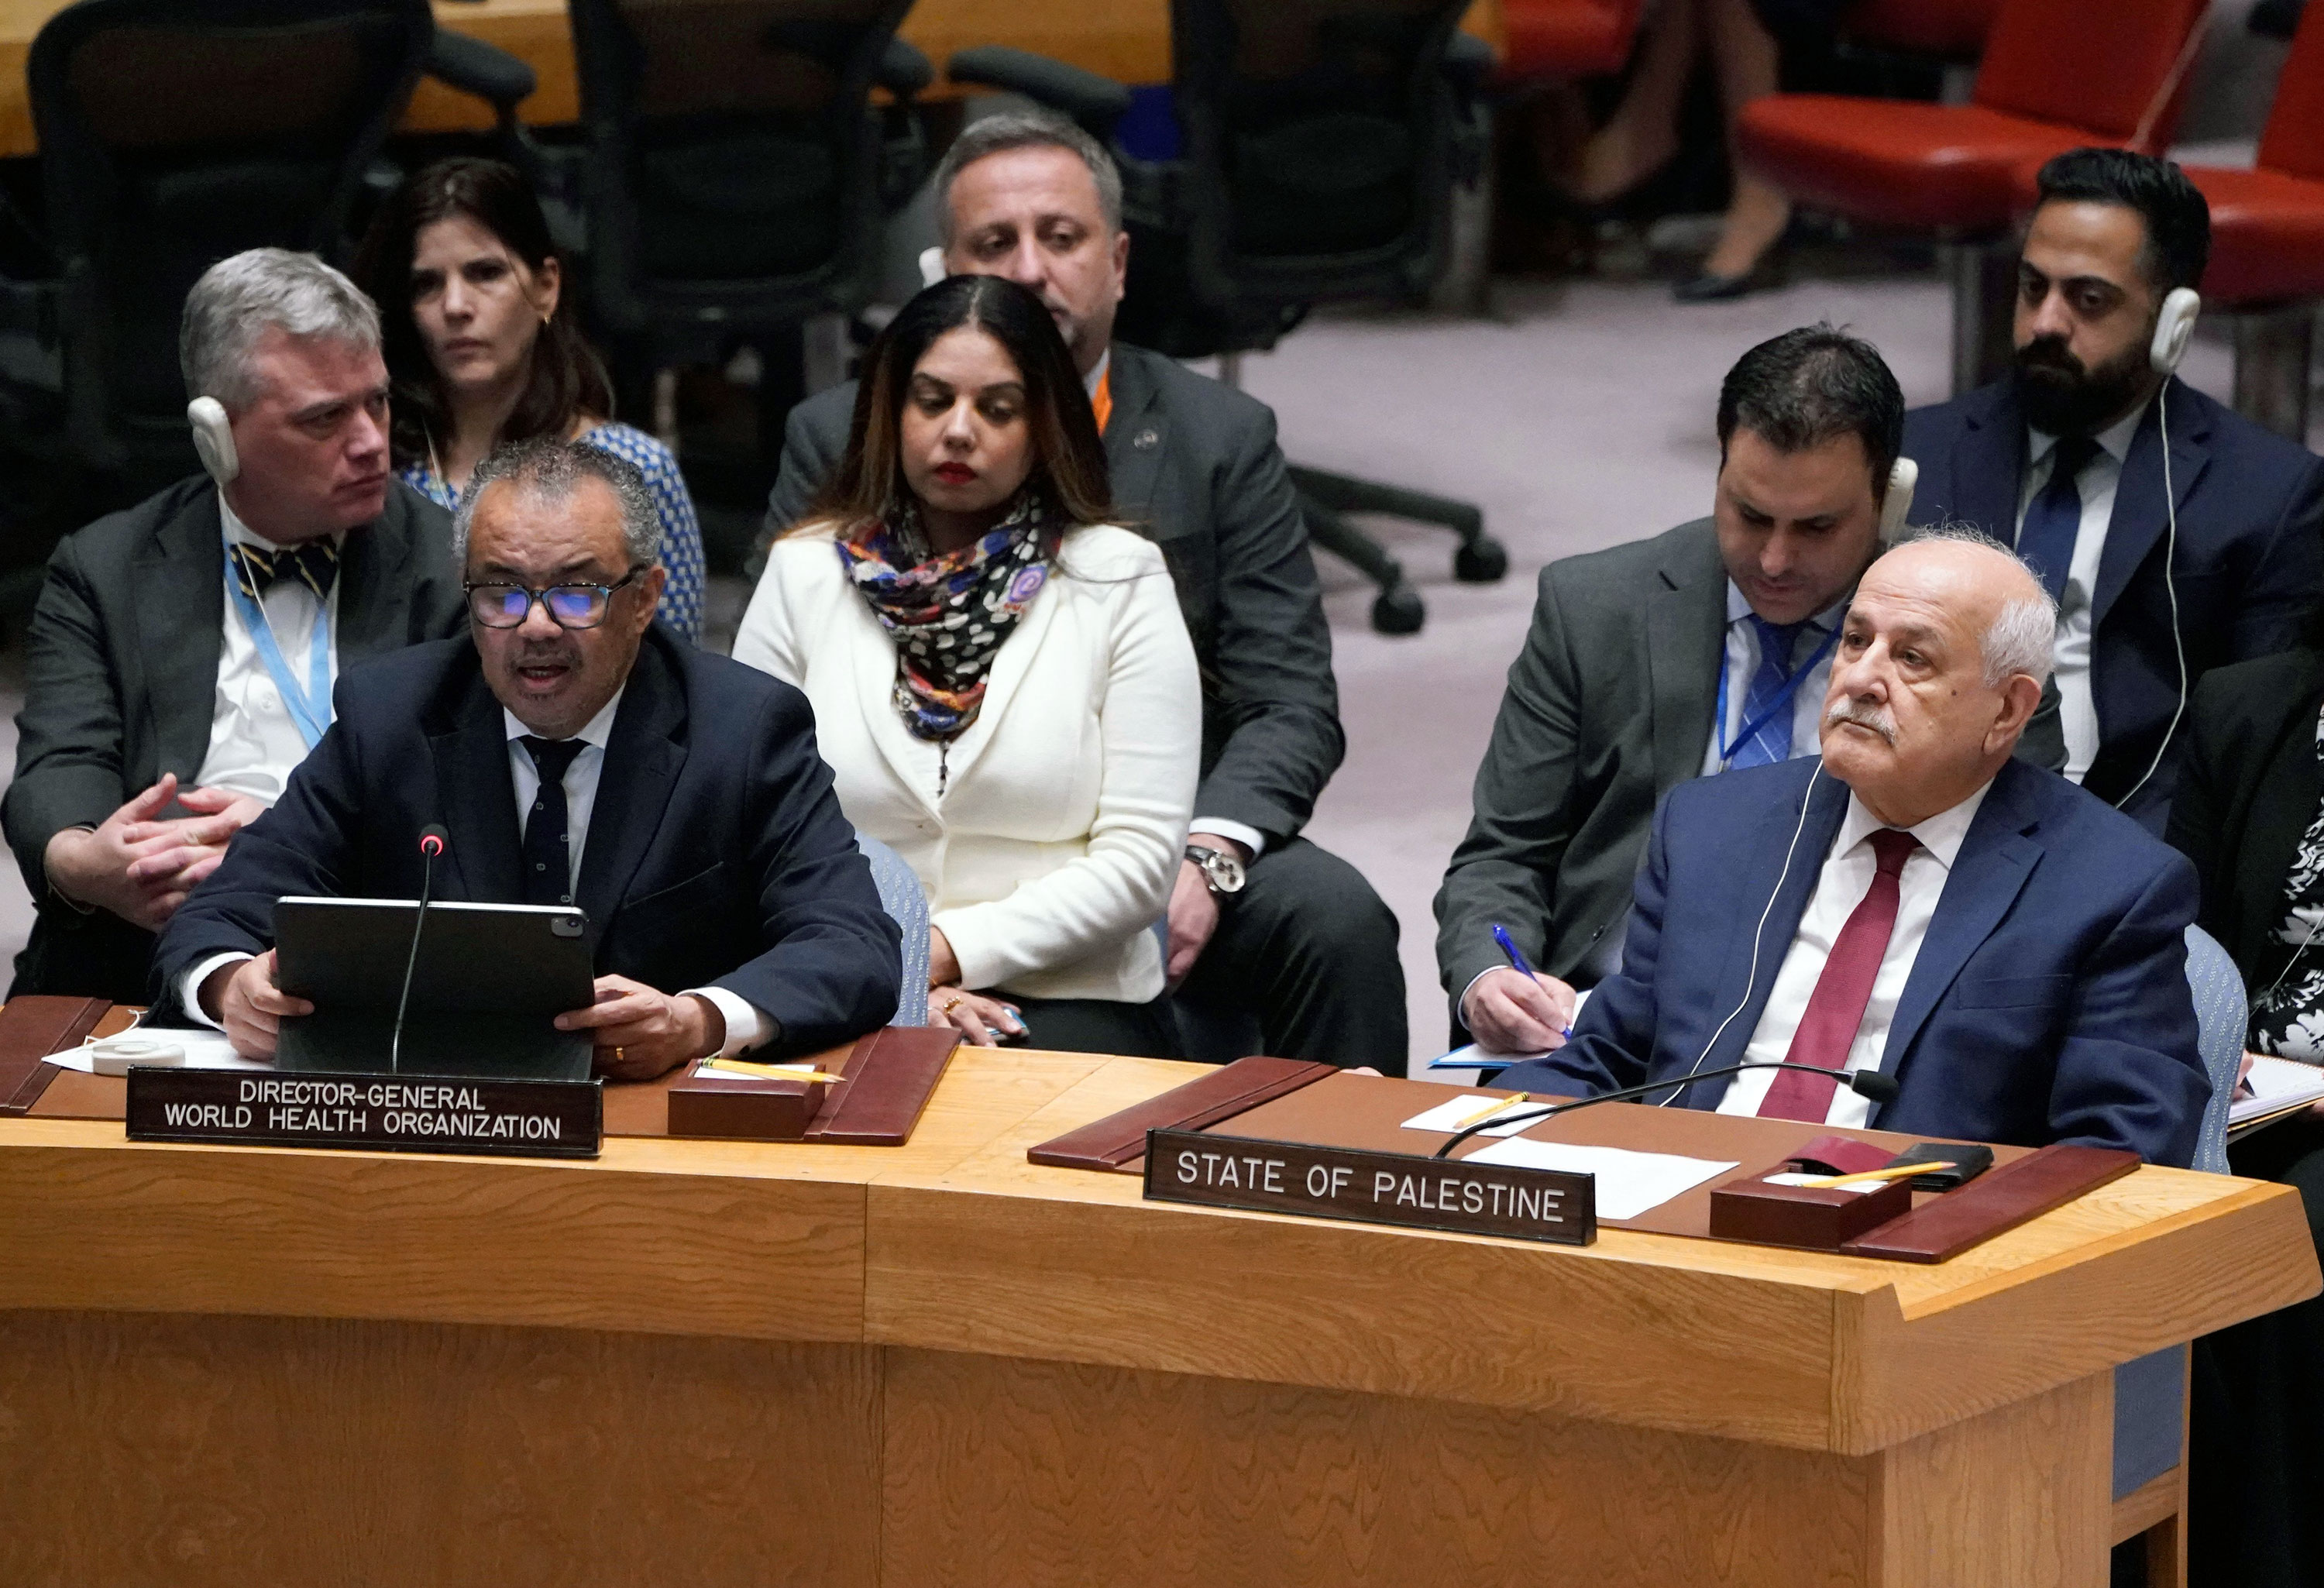 Dünya Sağlık Örgütü Genel Direktörü Tedros Ghebreyesus ve Filistin Devleti'nin Birleşmiş Milletler Daimi Gözlemcisi Büyükelçi Riyad Mansour, 10 Kasım'da BM Güvenlik Konseyi'nin toplantısına katıldı. 